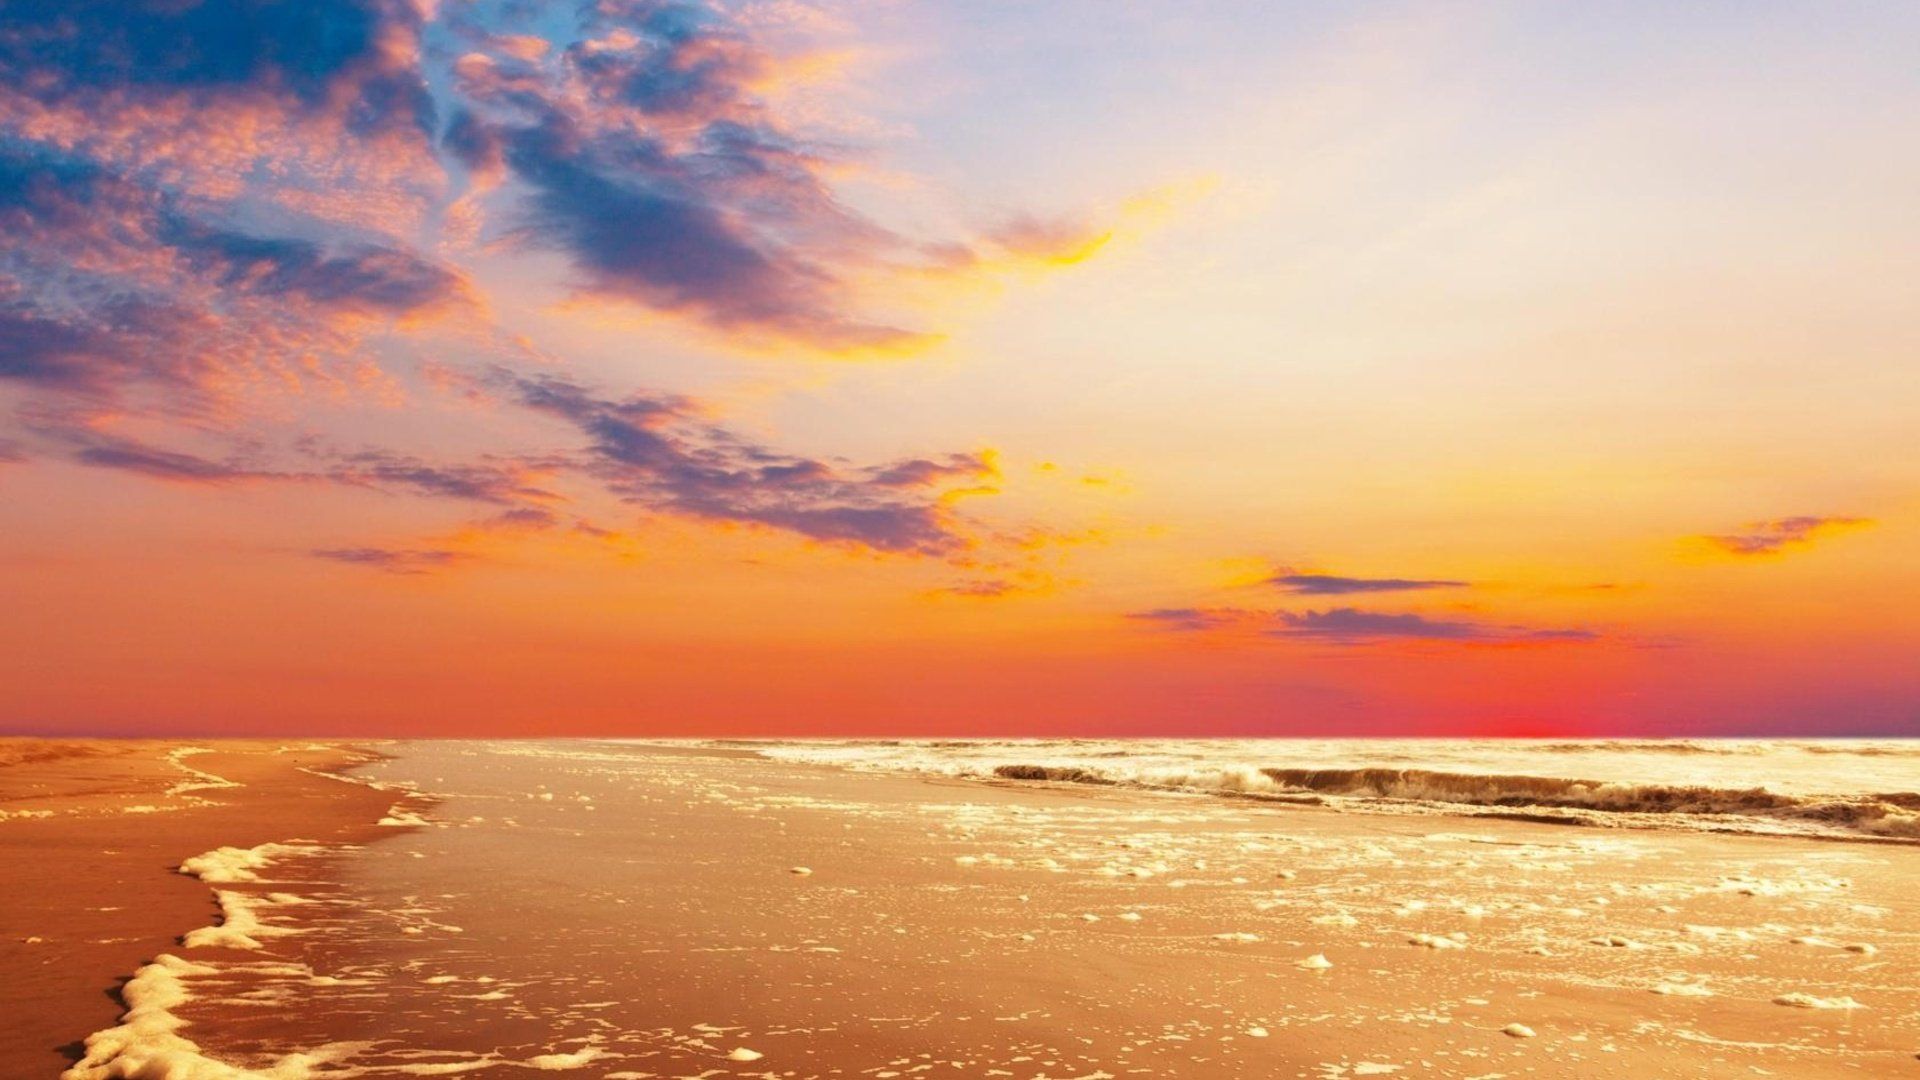 Beach sky clouds sea sunset beauty landscape summer wallpaperx1080